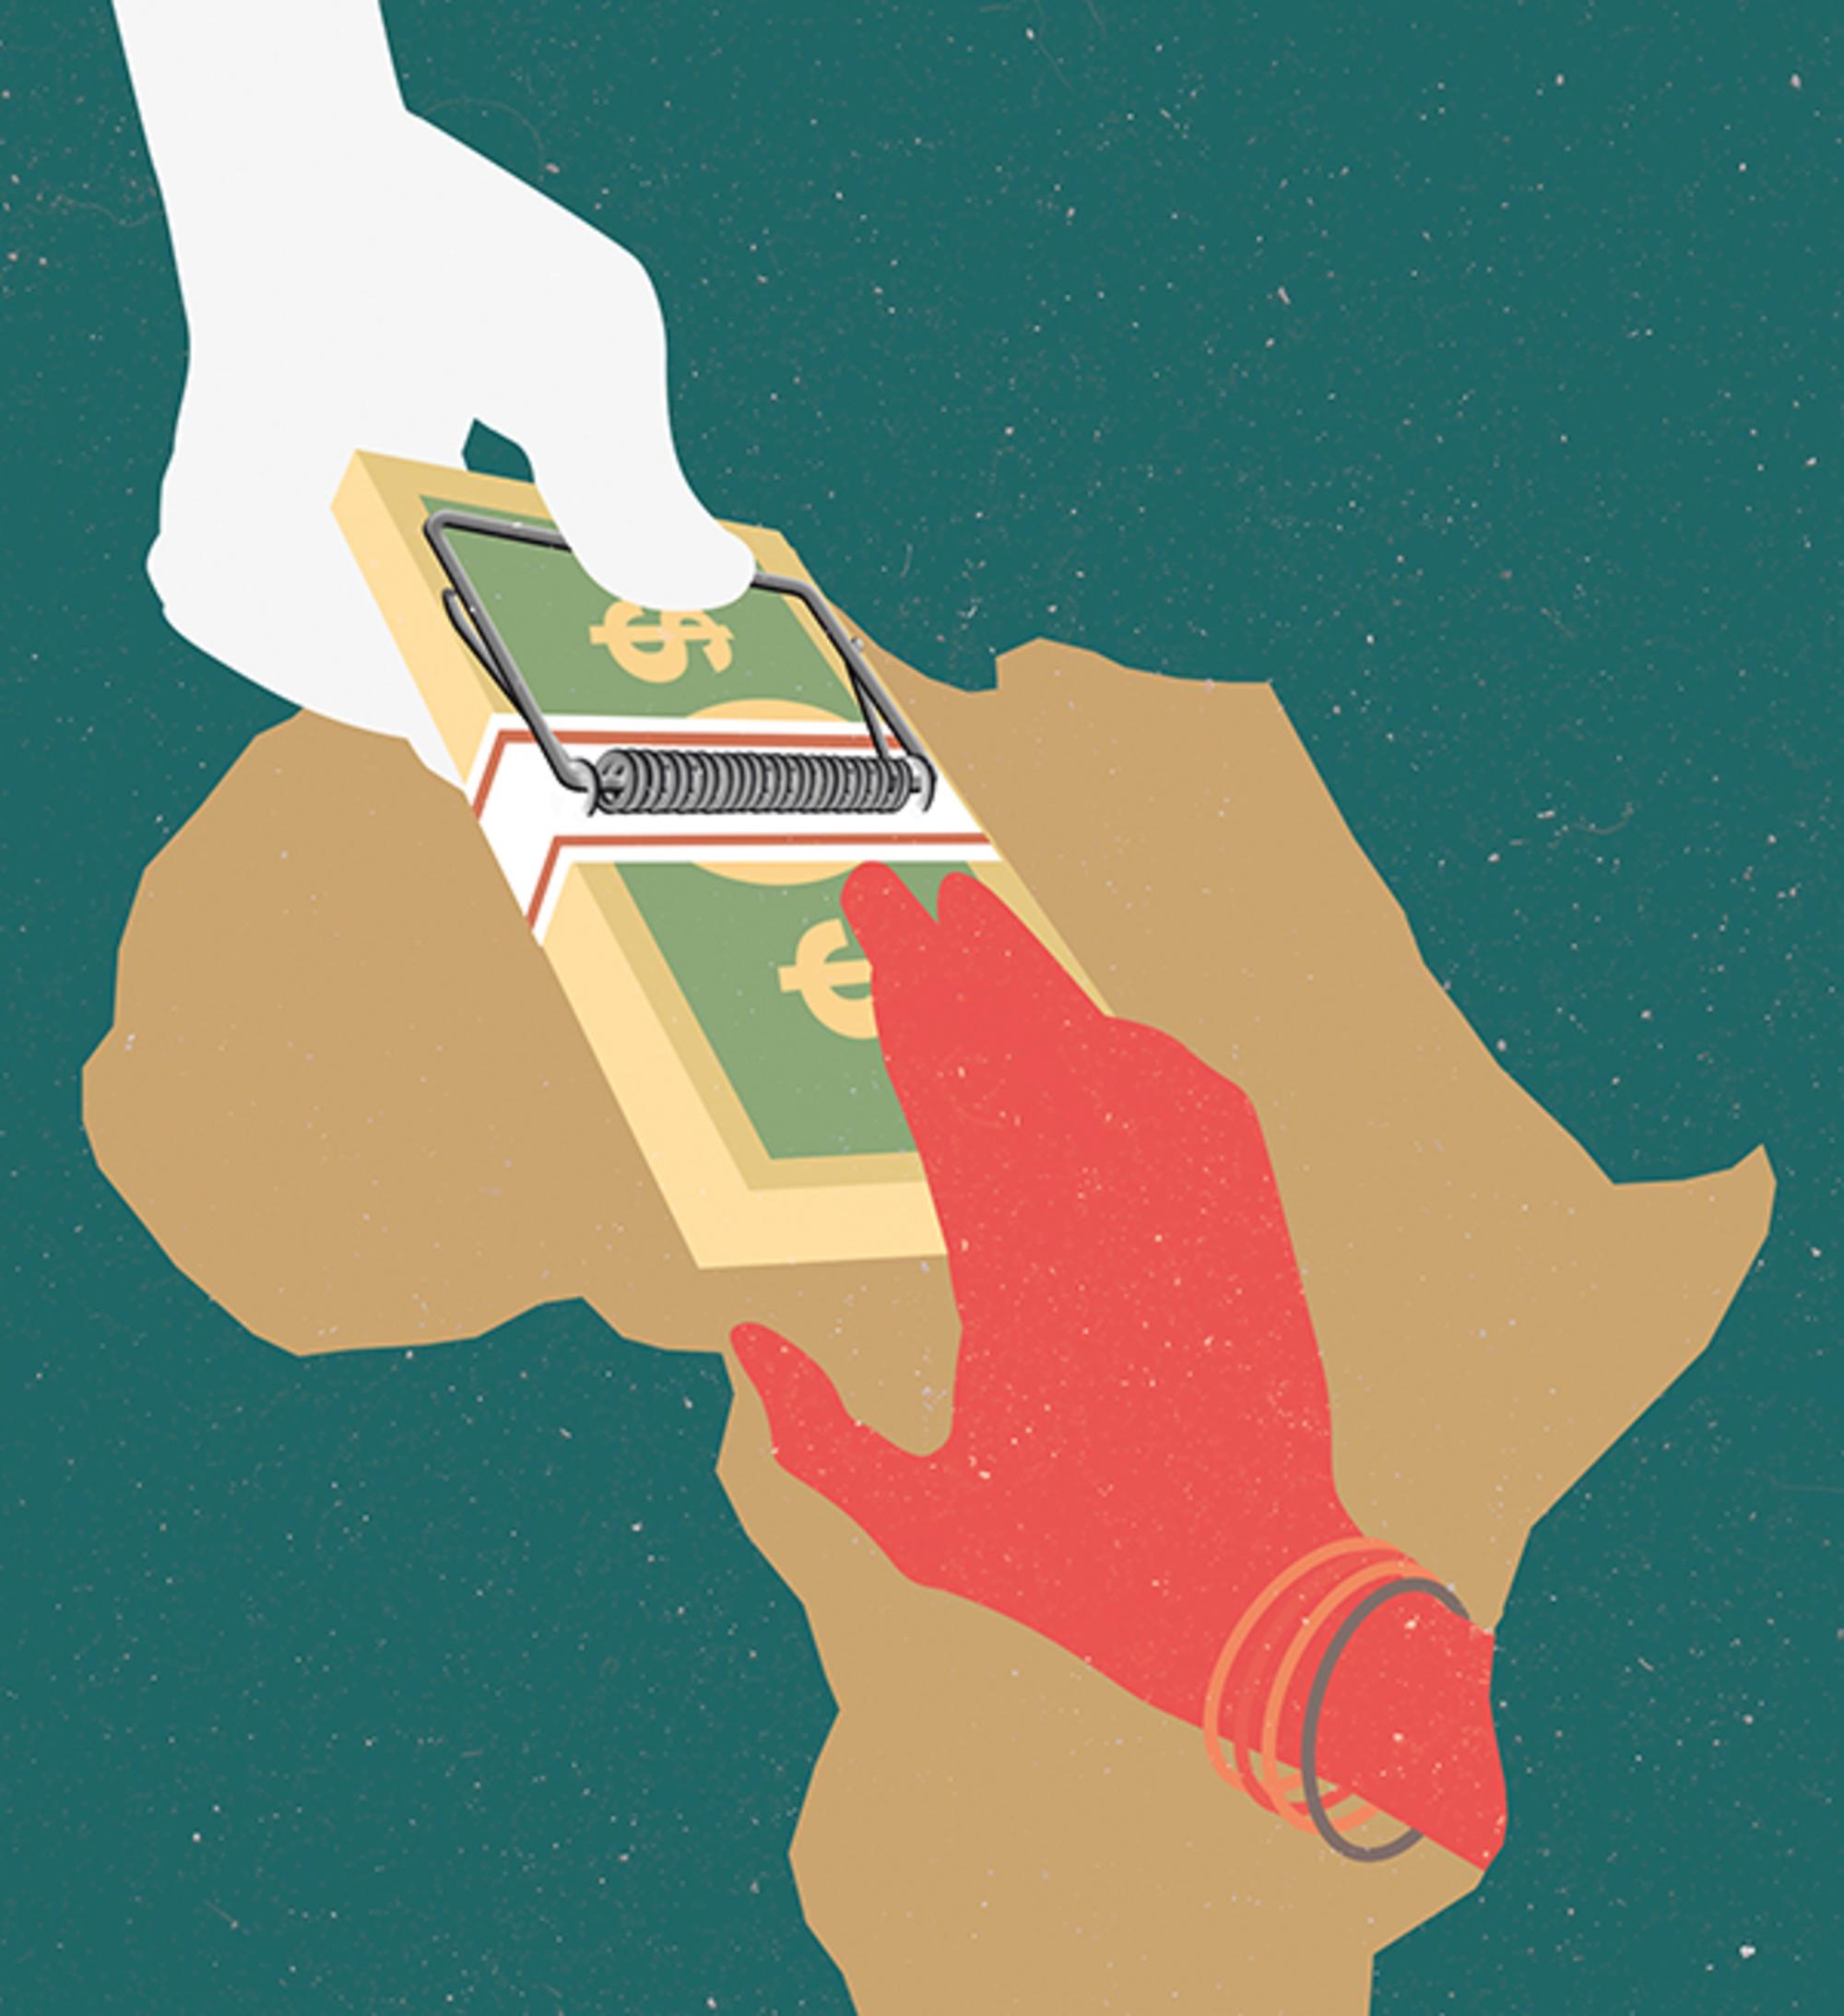 Mujeres africanas unidas contra los microcréditos